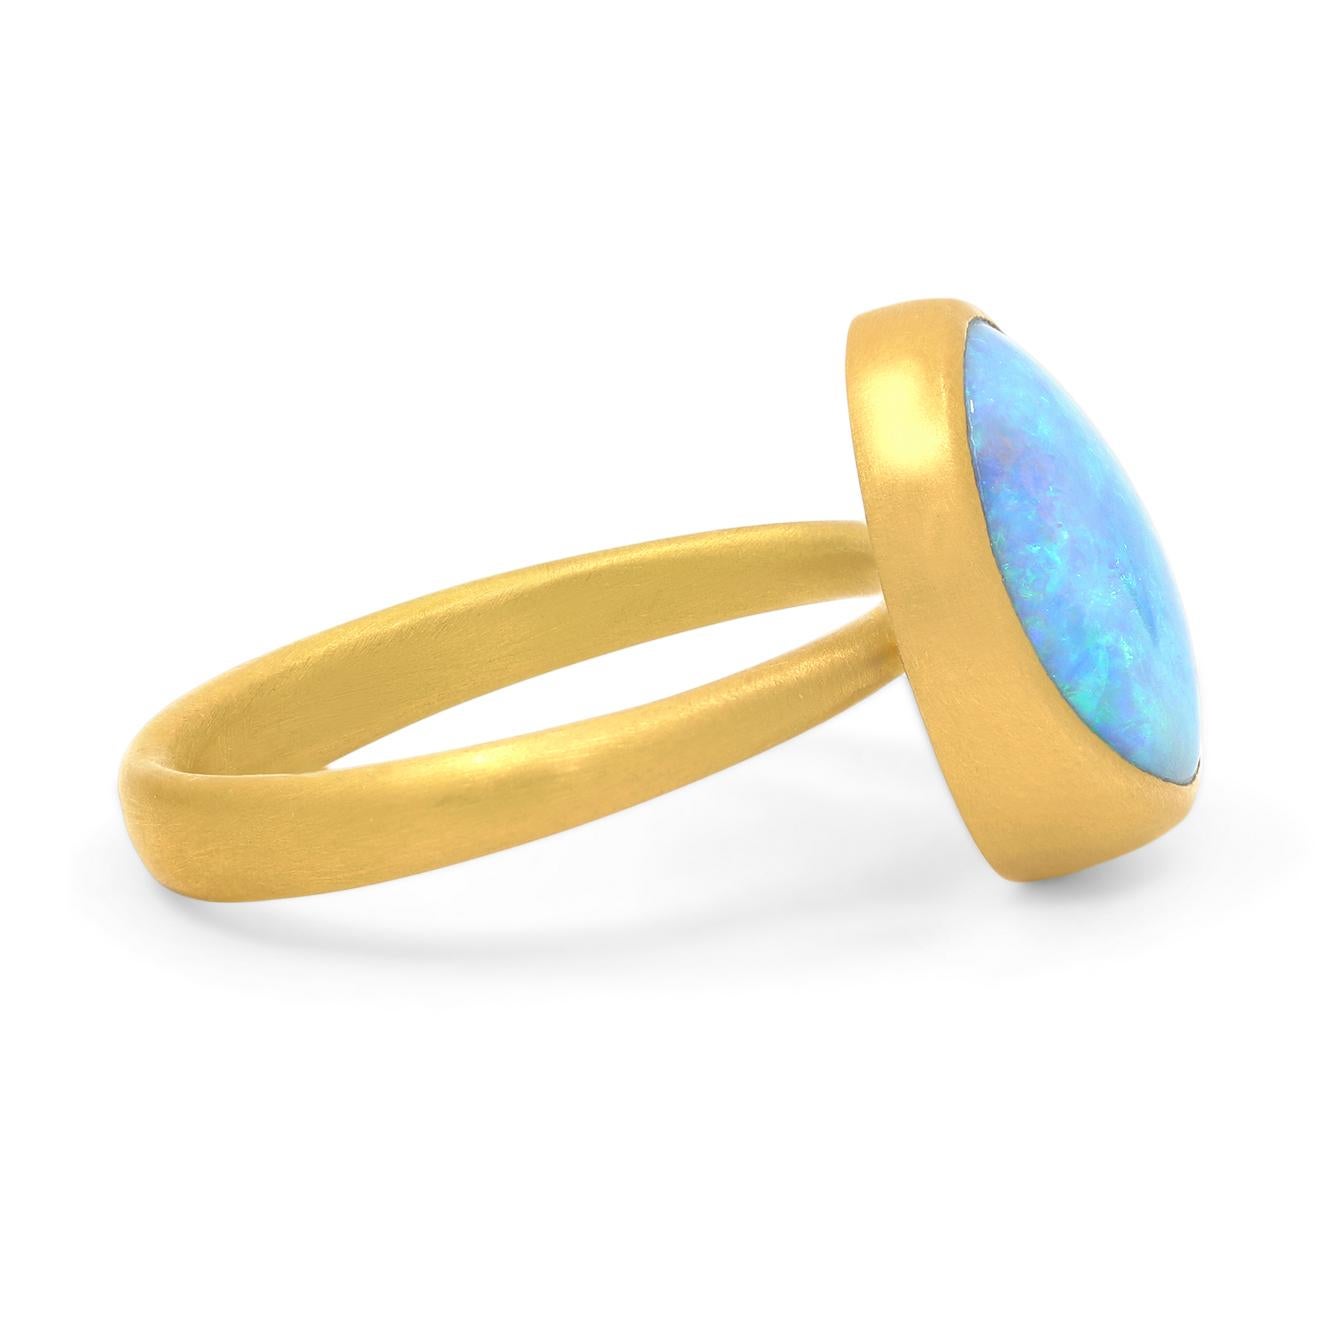 boulder opal ring blue nile